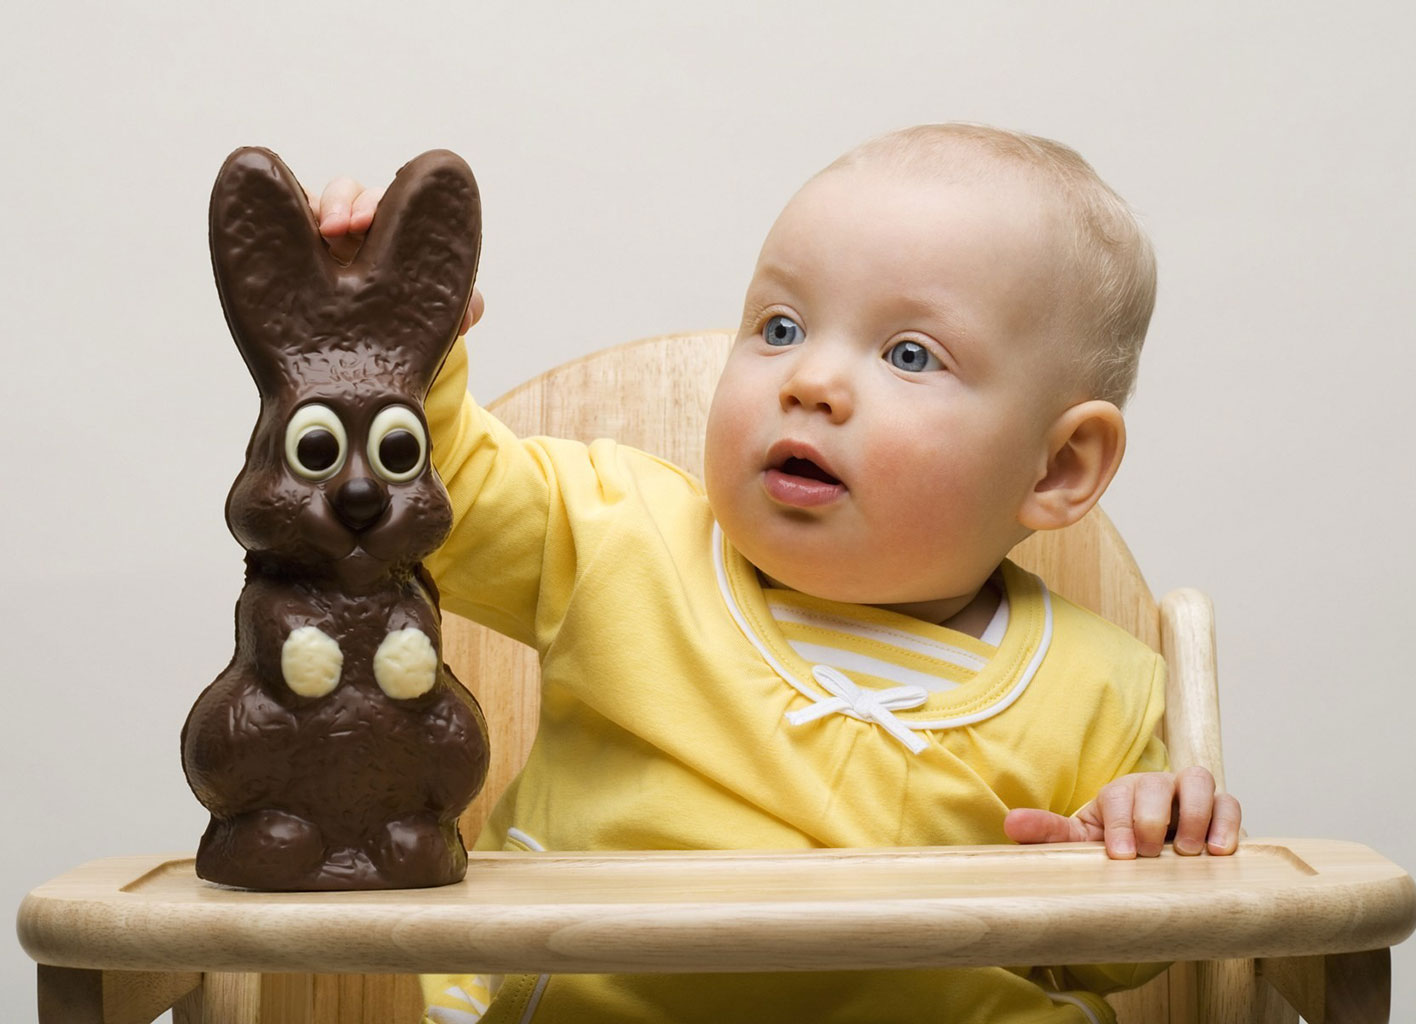 Шоколад противопоказан для детей до года